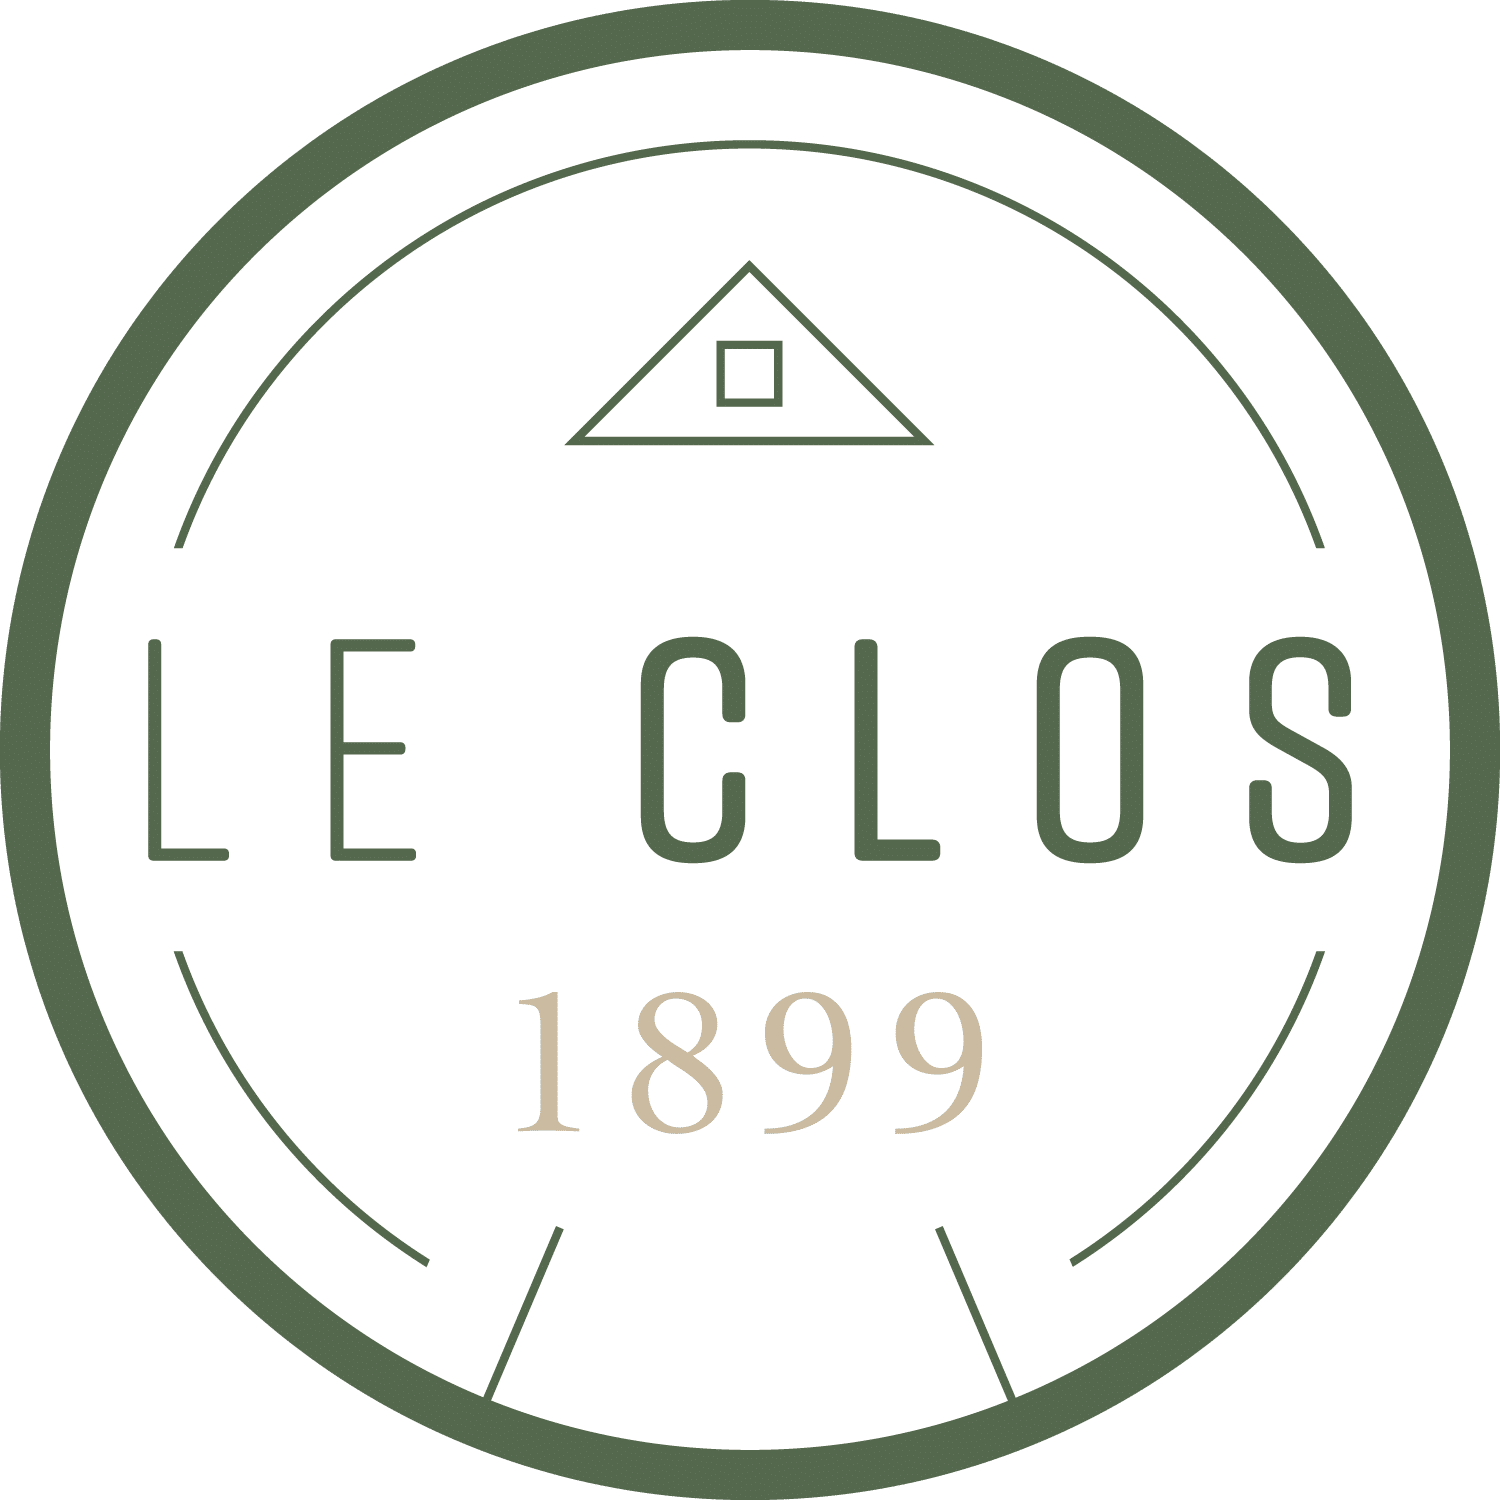 Le Clos 1899